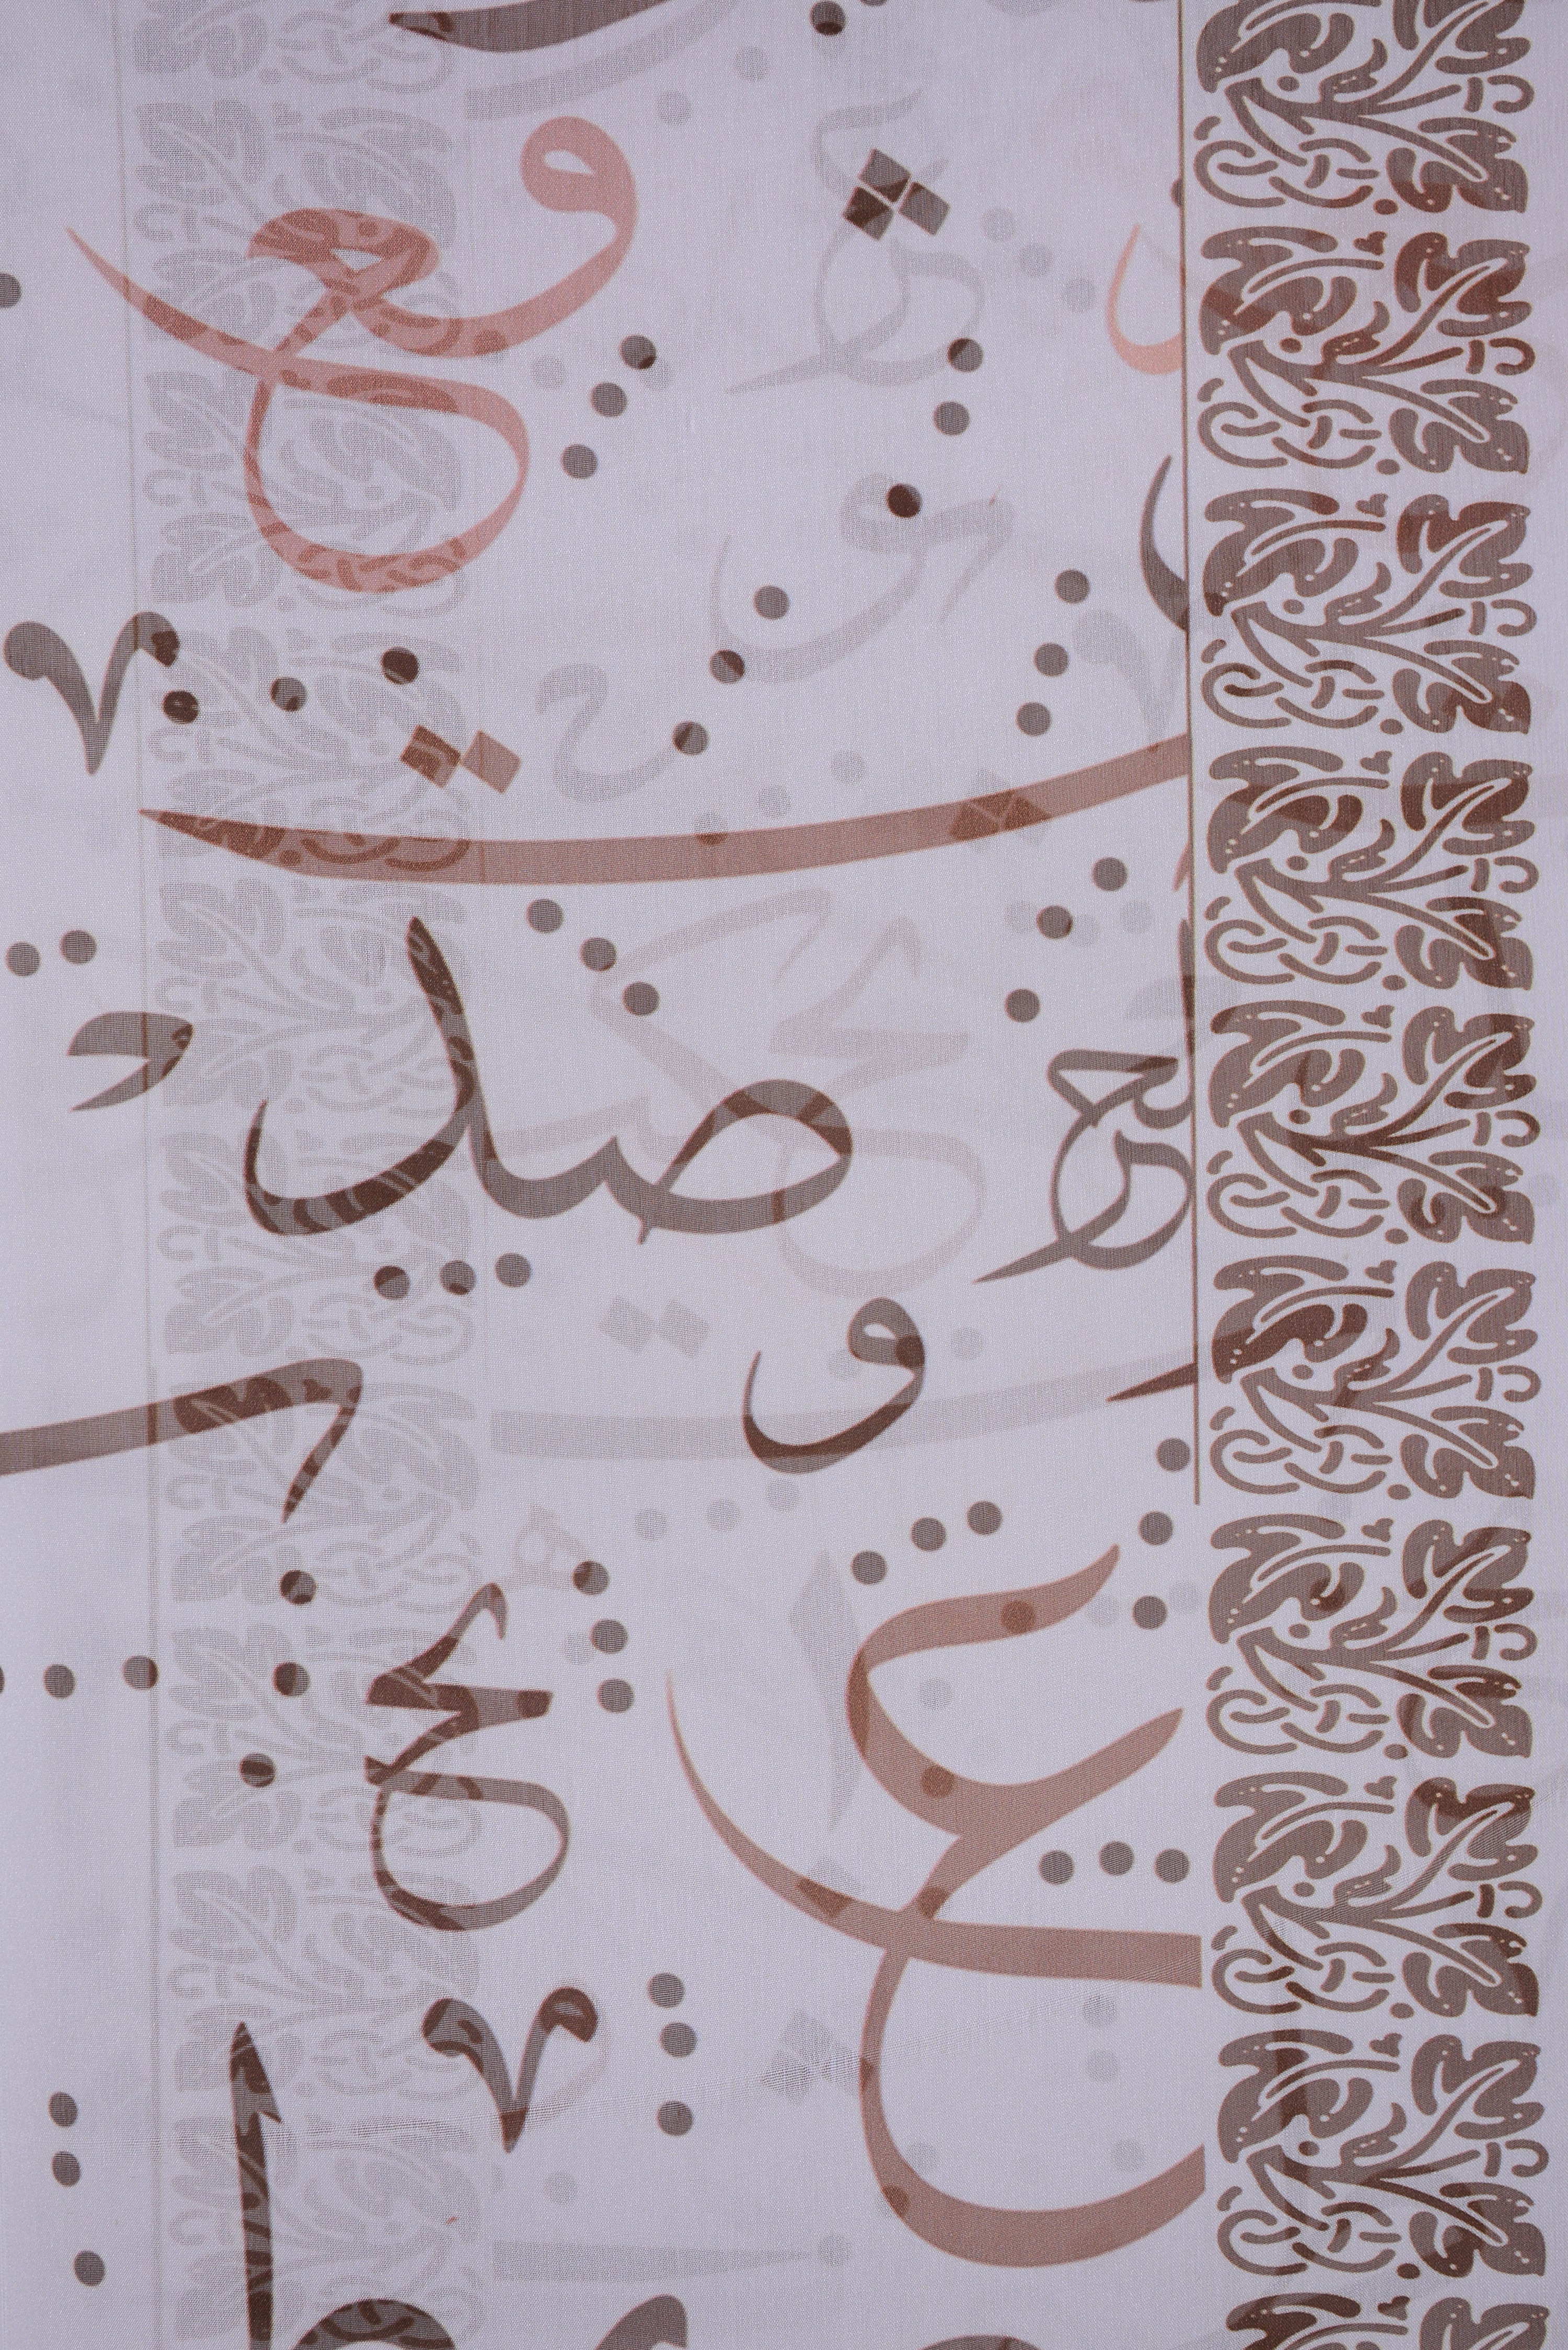 Artisan & Urdu Poetry Silk Dupatta for Women | Women Clothing D-02 Off White